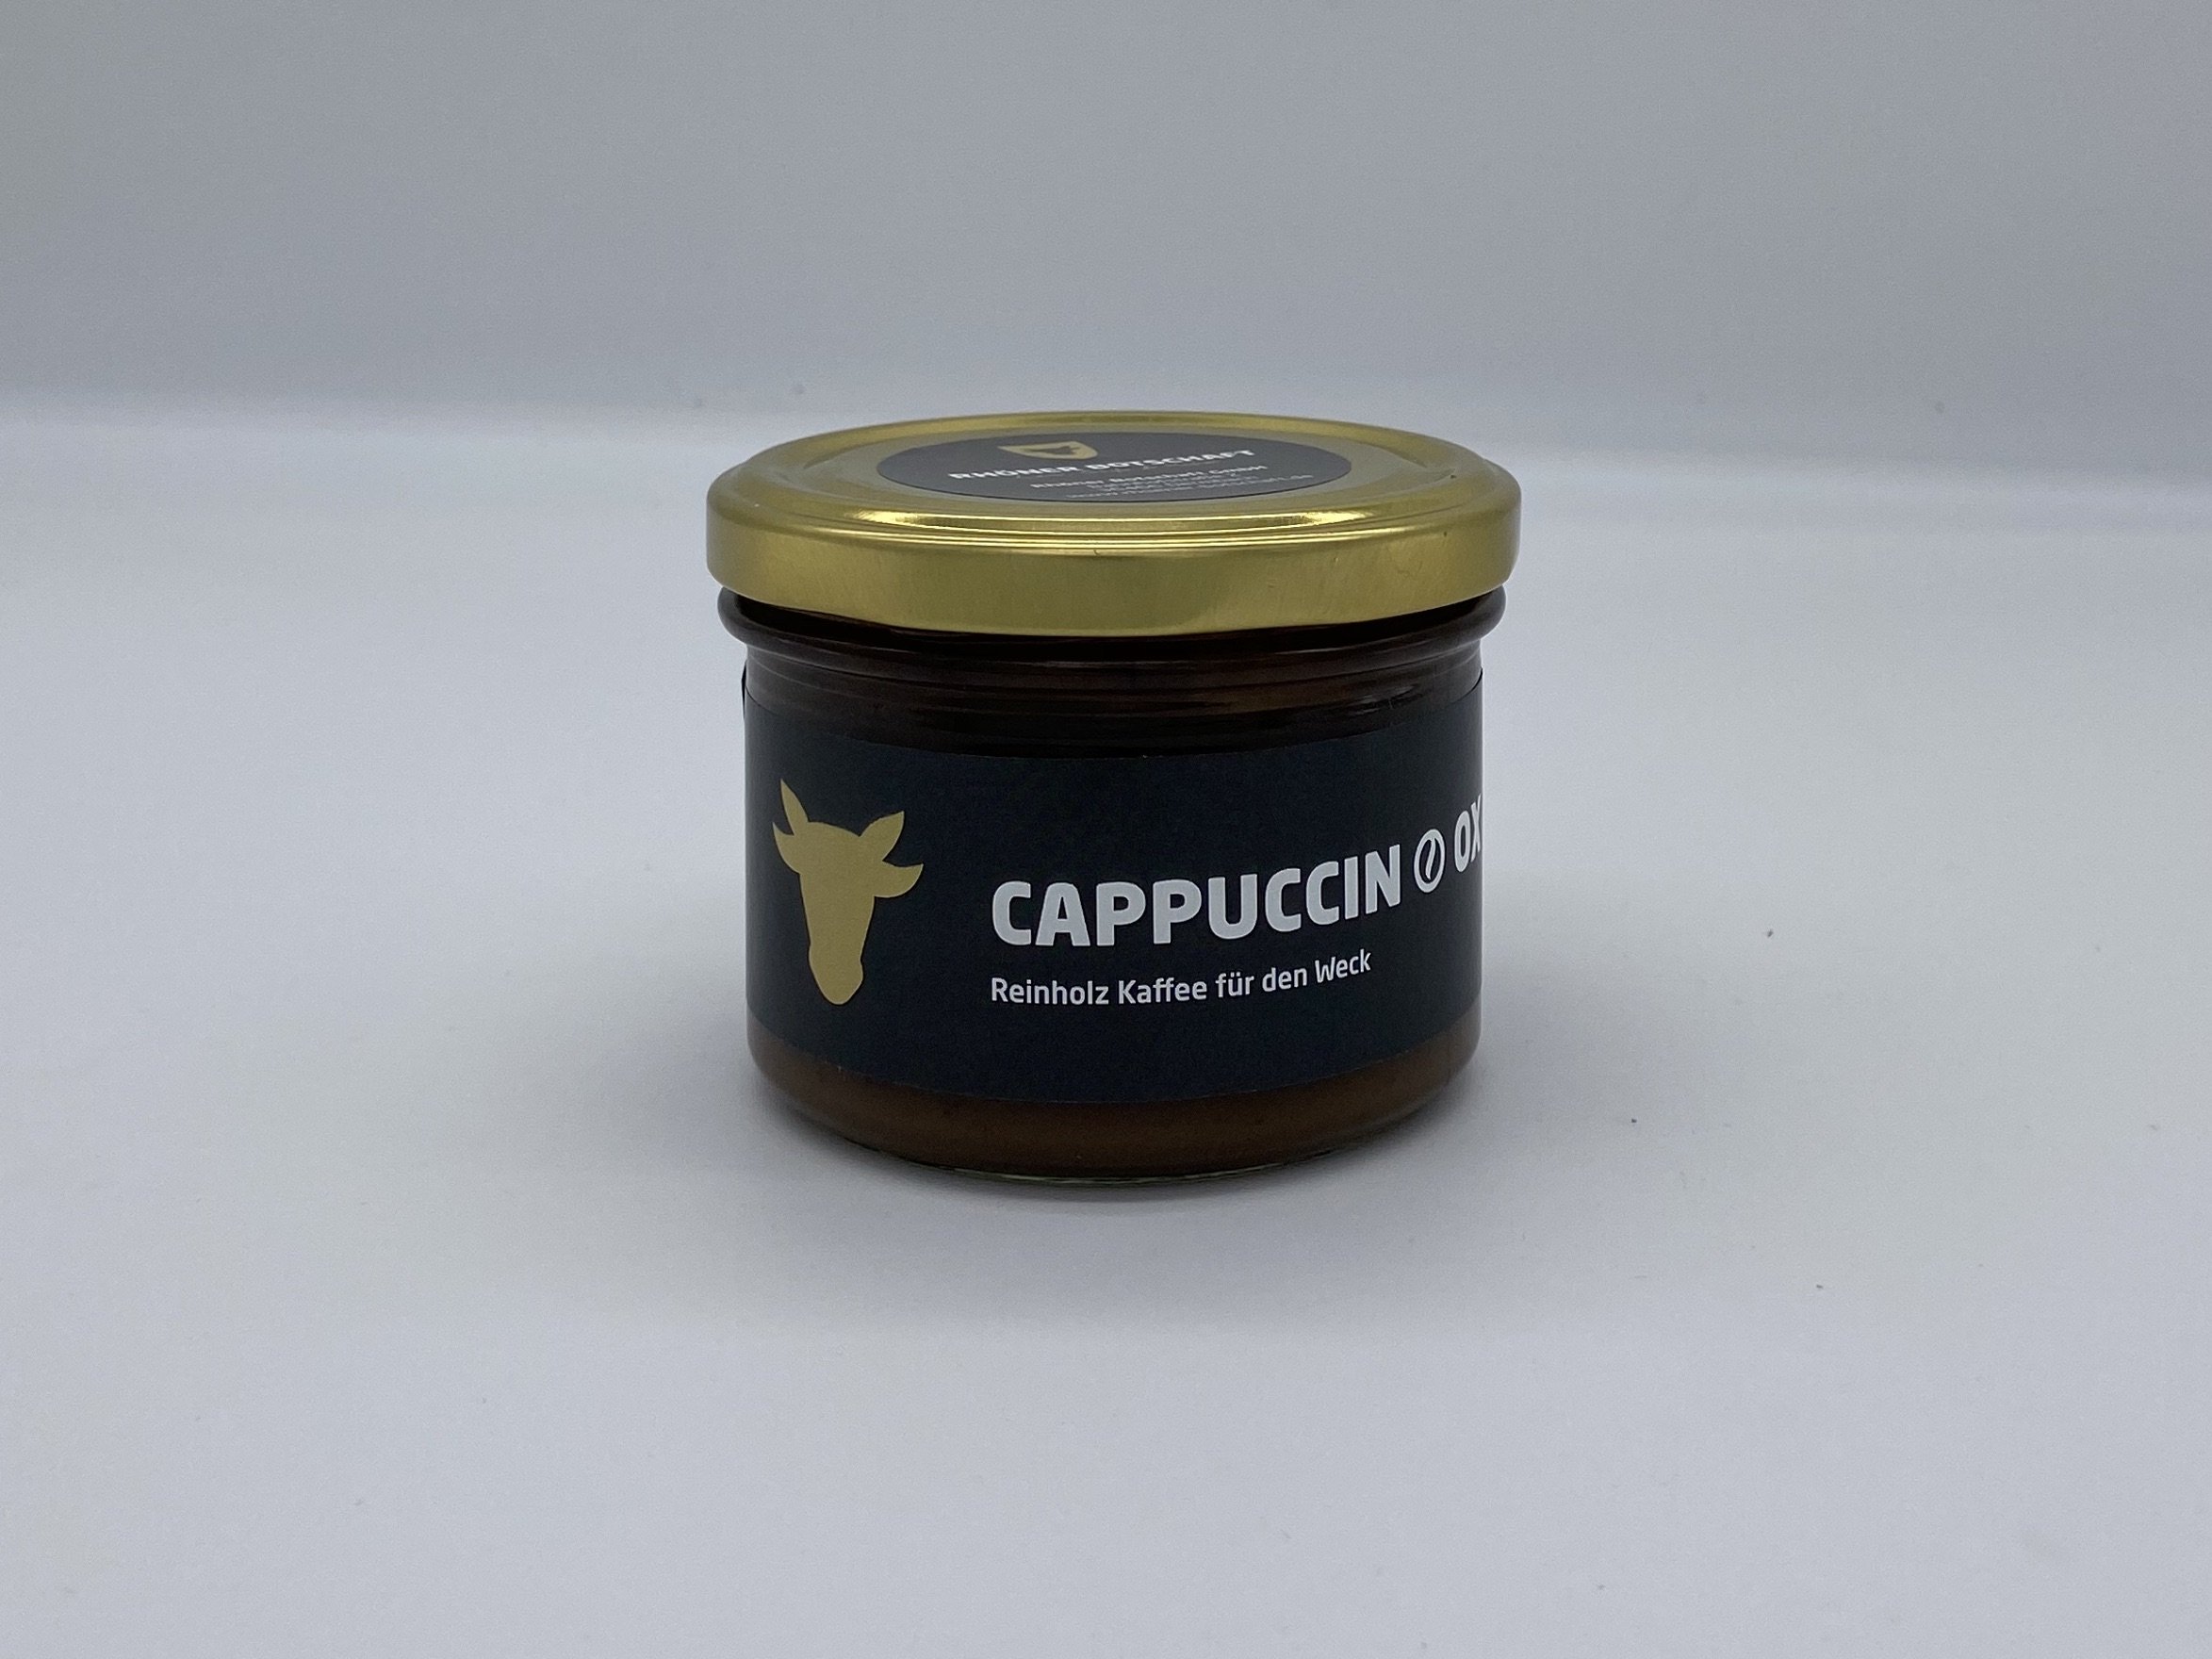 CappunchinOx ... Reinholz Kaffee für den Weck